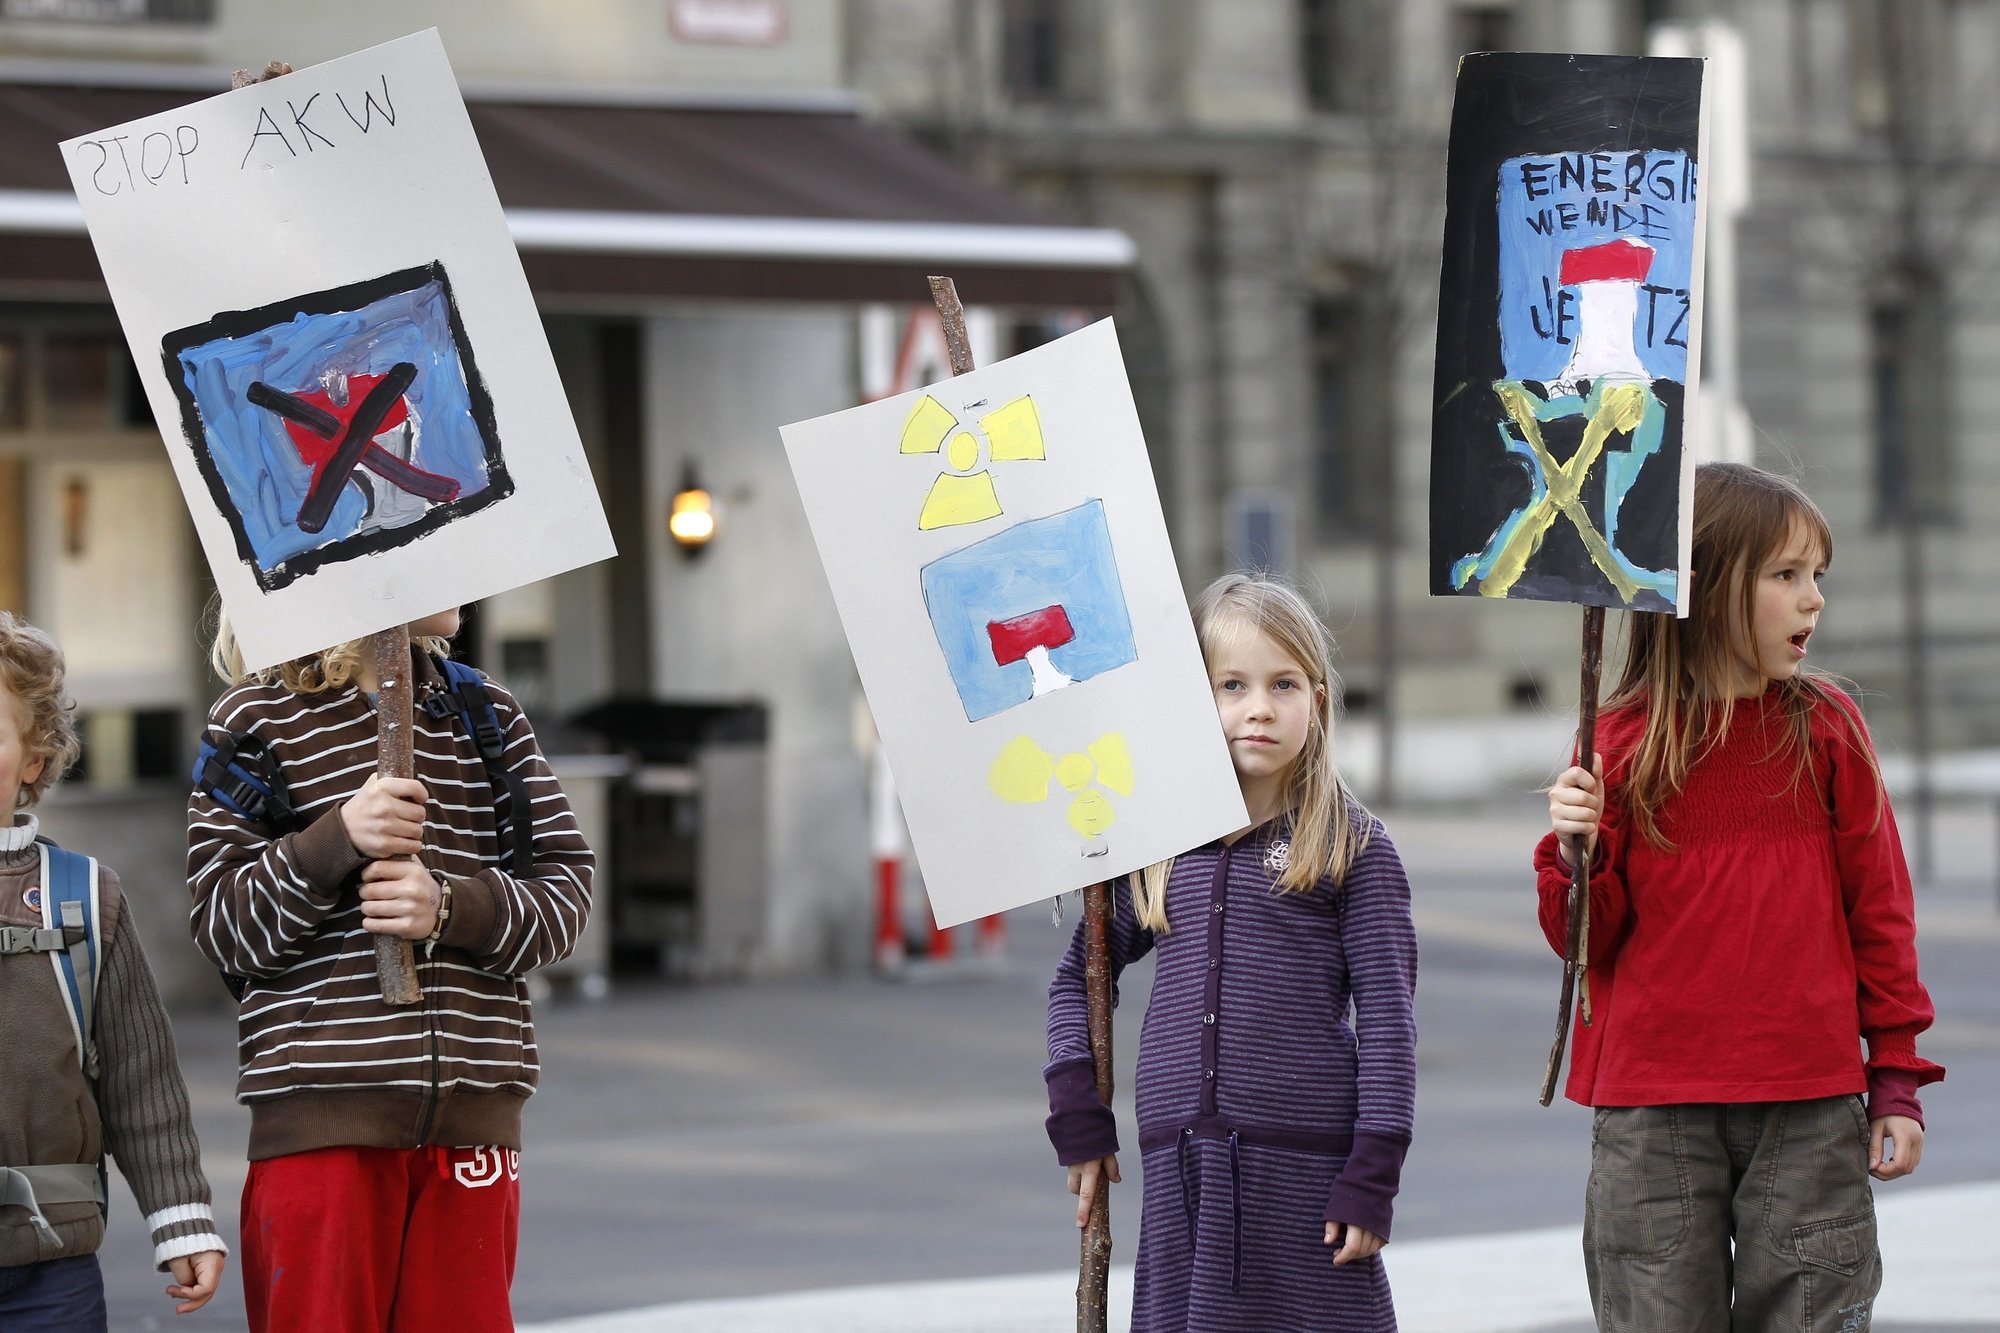 Le lundi 14 mars 2011, des enfants participent à une manifestation contre le nucléaire à Berne, trois jours après la catastrophe de Fukushima au Japon.